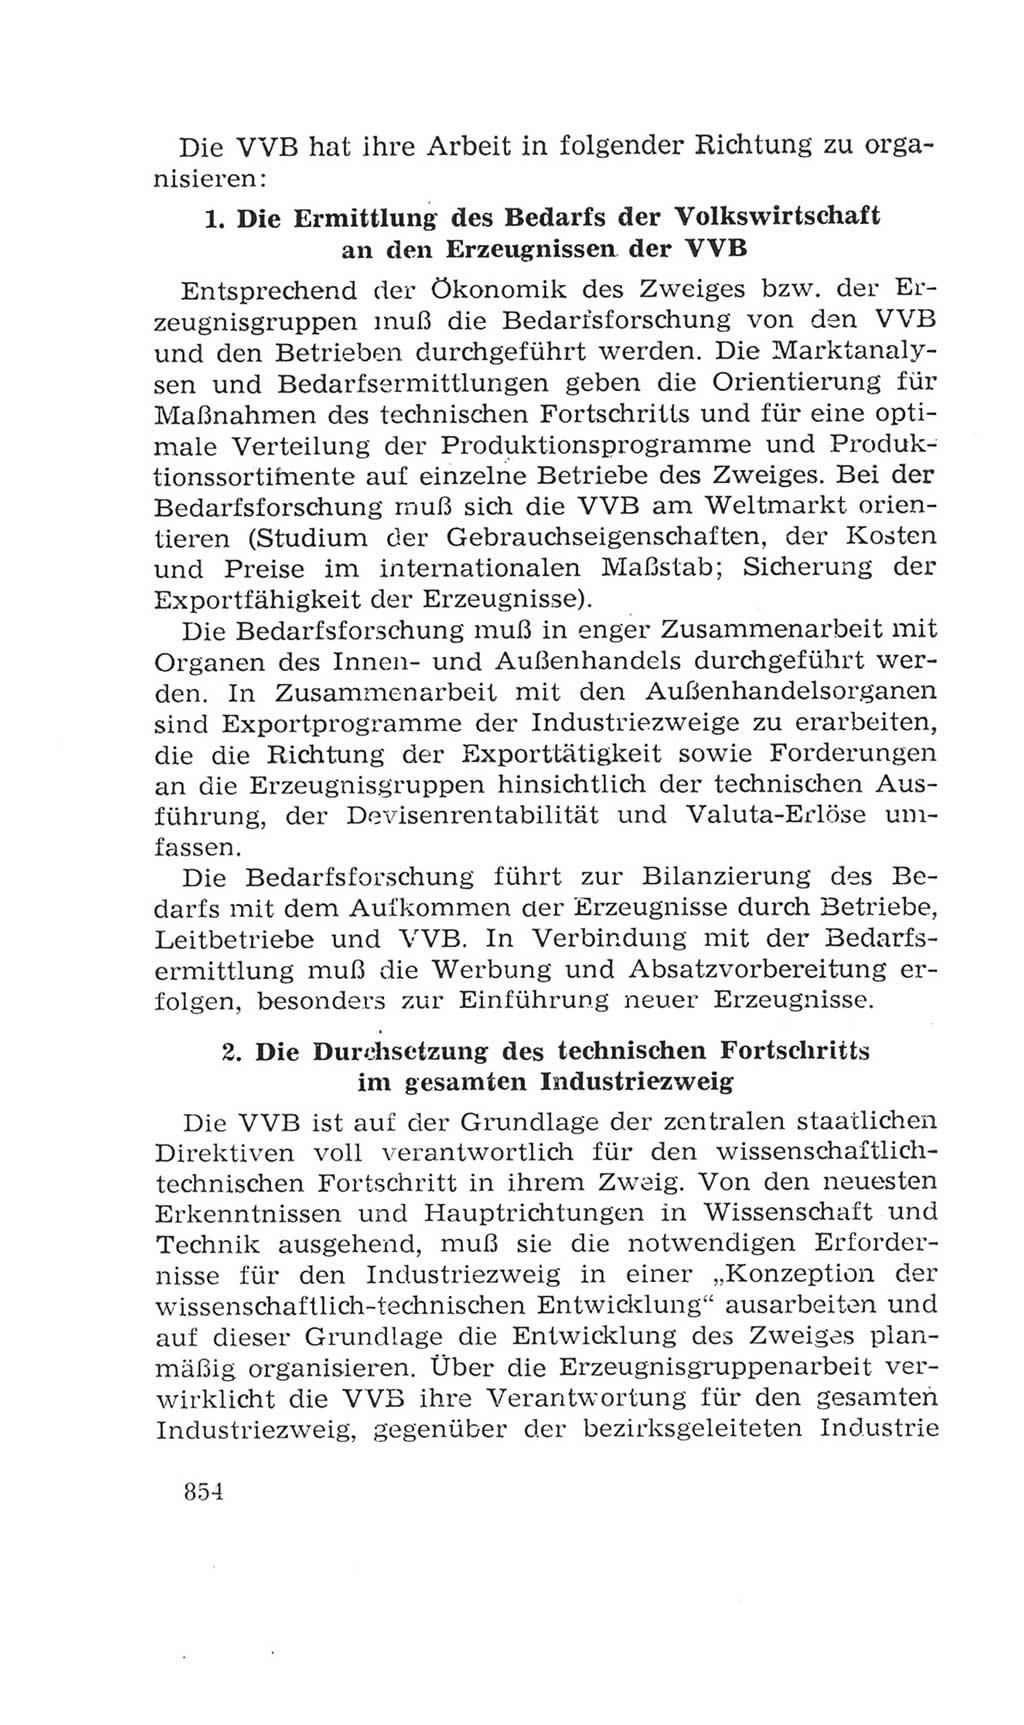 Volkskammer (VK) der Deutschen Demokratischen Republik (DDR), 4. Wahlperiode 1963-1967, Seite 854 (VK. DDR 4. WP. 1963-1967, S. 854)